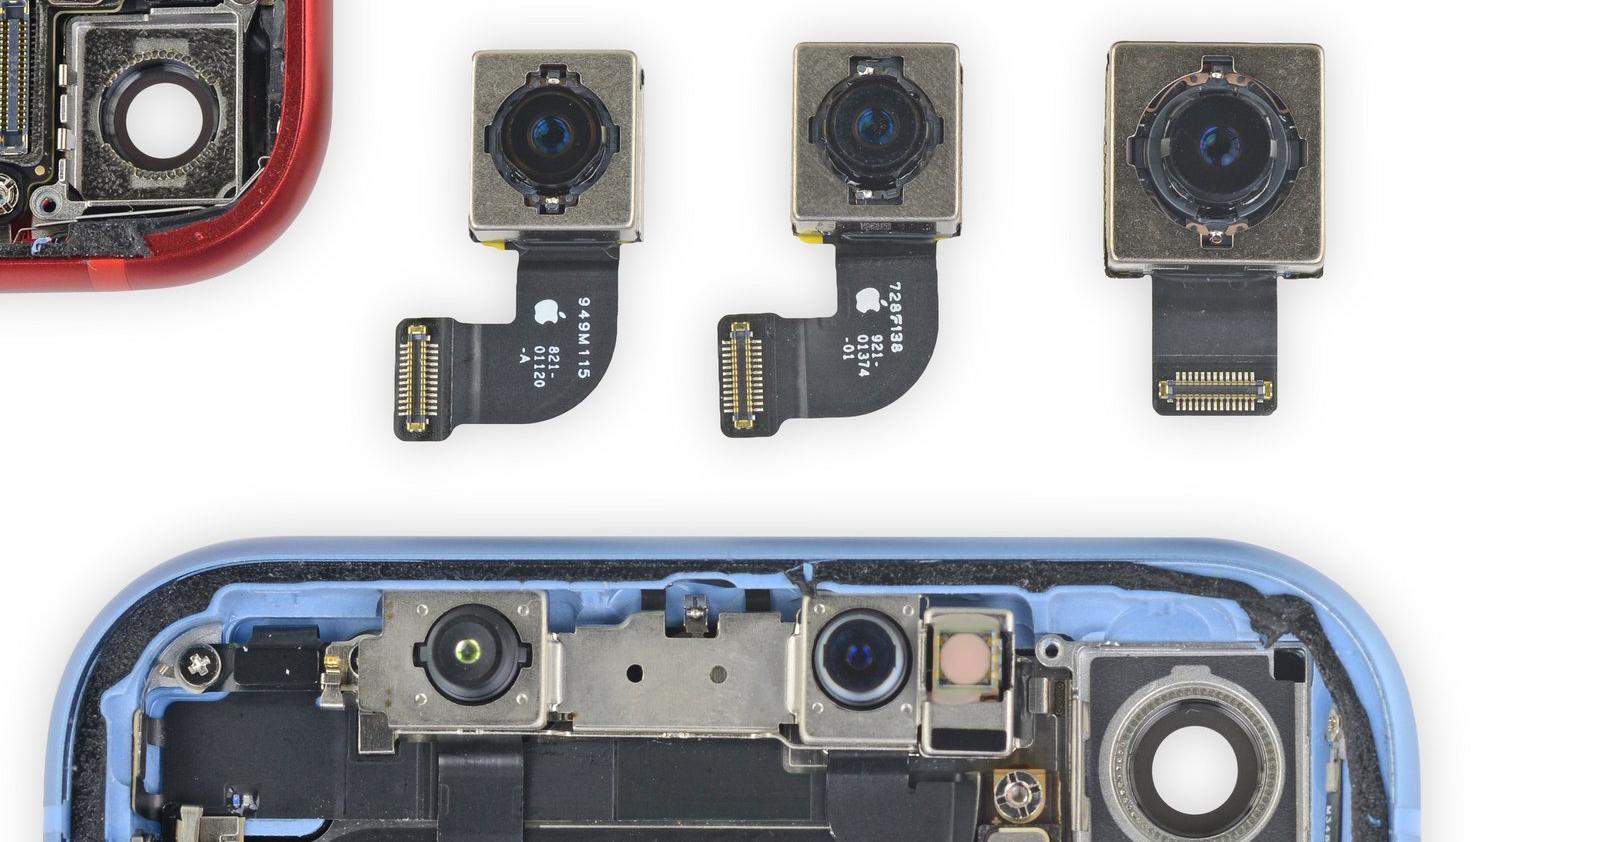 iPhone SE 2020 sử dụng cảm biến camera tương tự iPhone 8, đạt 6/10 điểm về độ dễ sửa chữa